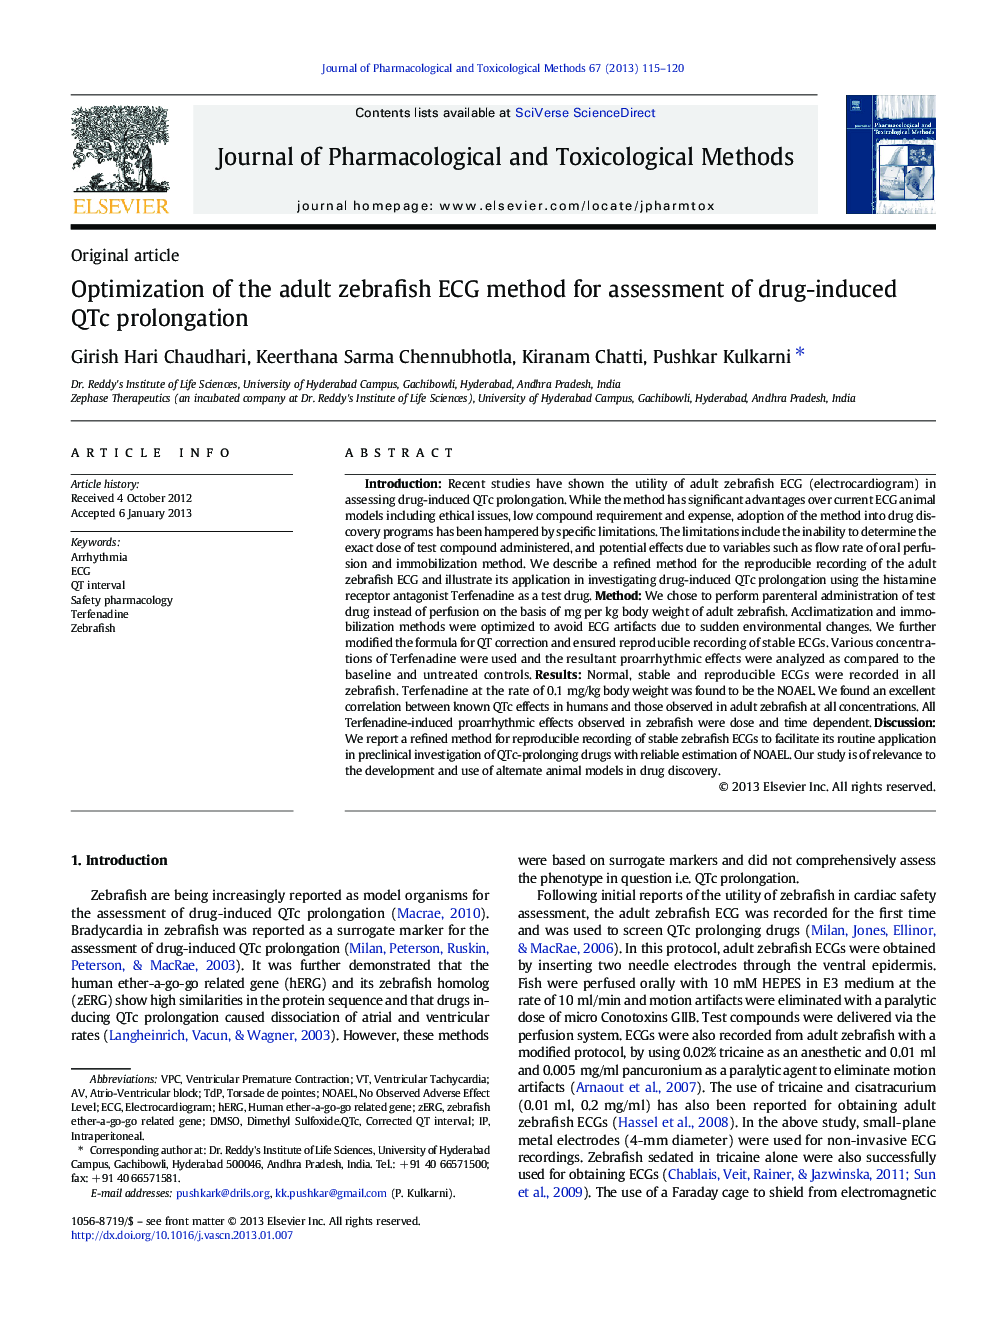 Optimization of the adult zebrafish ECG method for assessment of drug-induced QTc prolongation